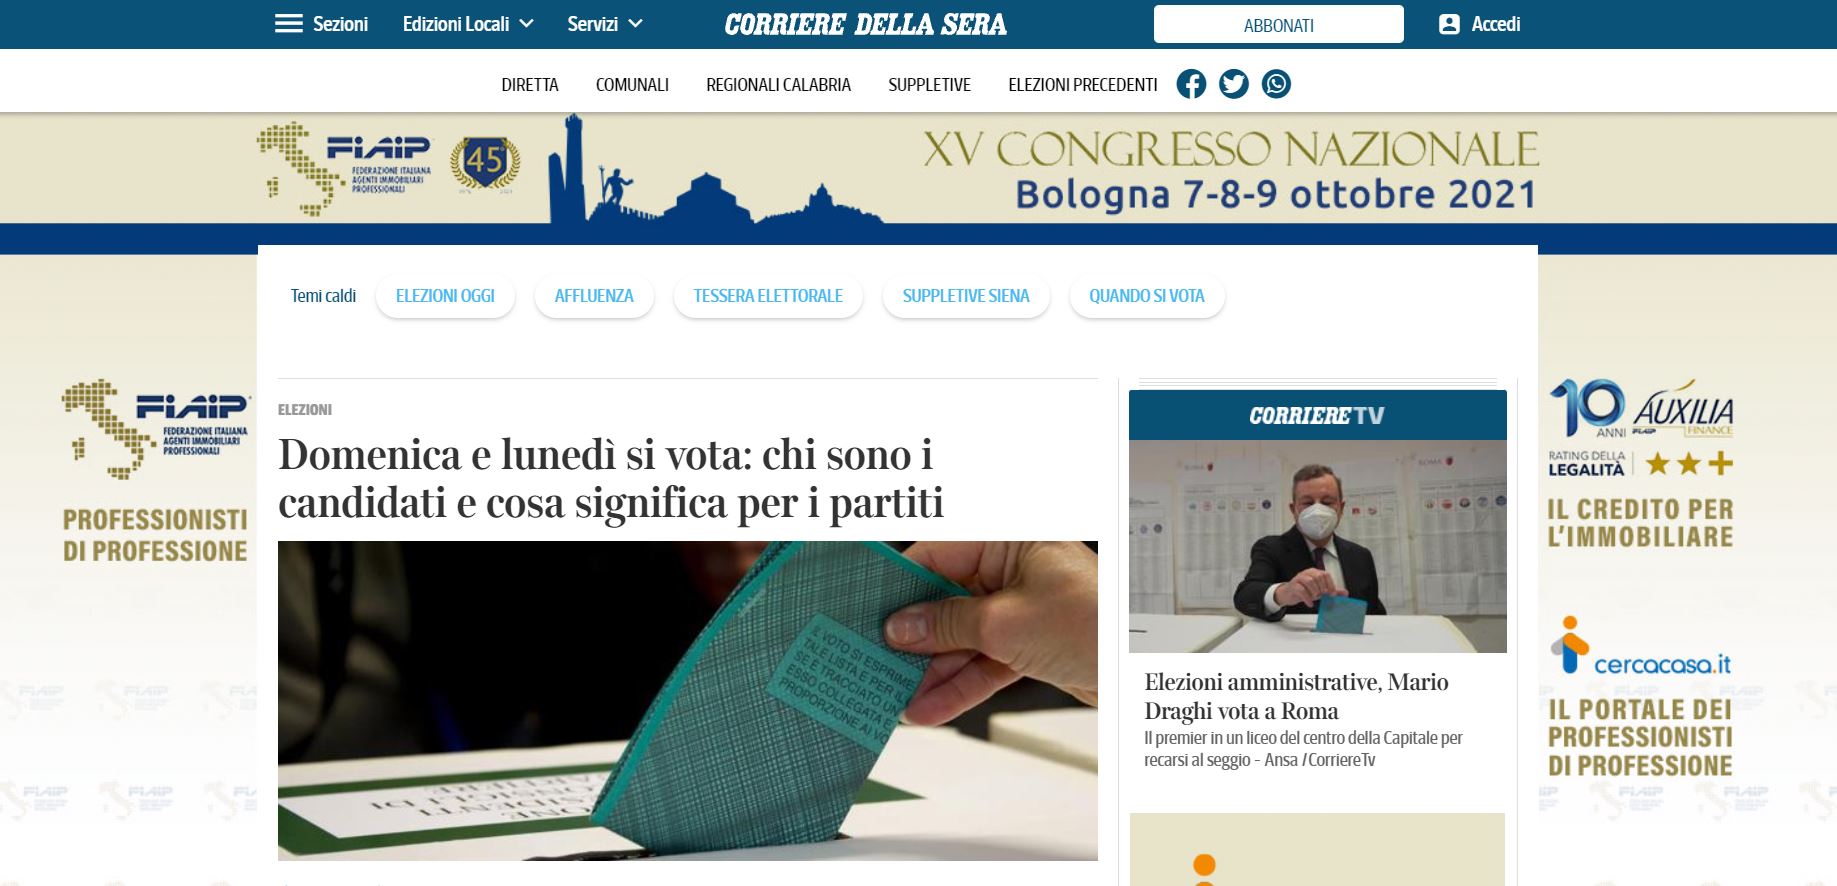 Campagna pubblicitaria Fiaip: Spot  televisivo su La7 e adv su Corriere della Sera e Corriere.it